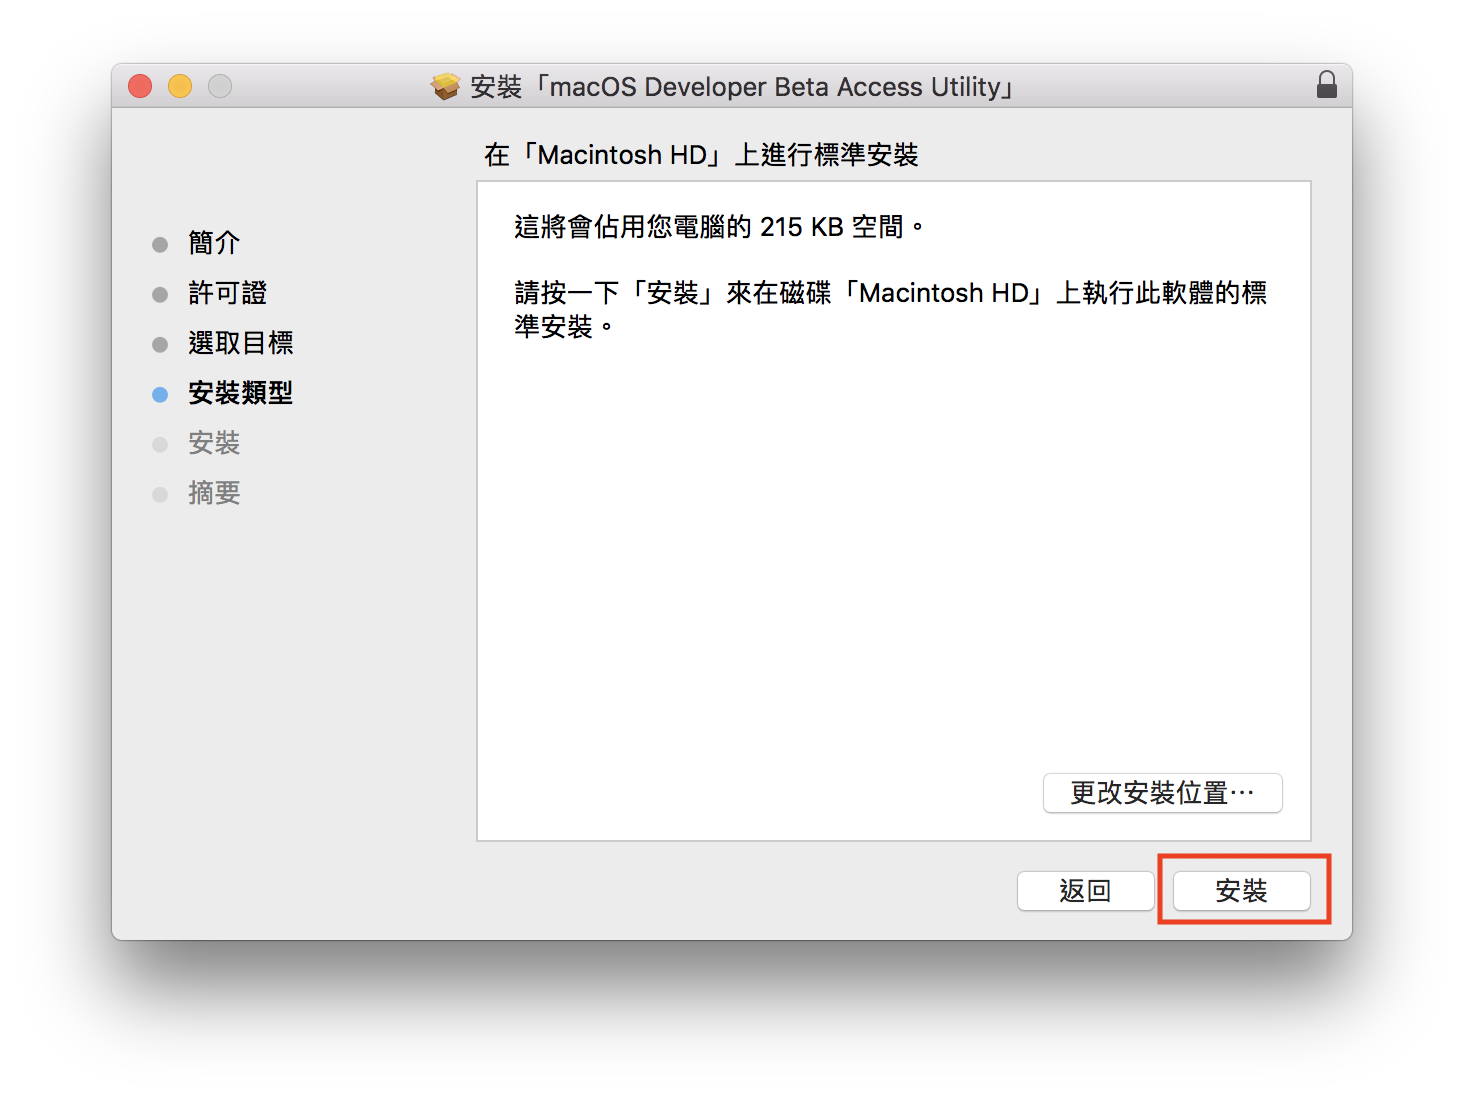 macOS 10.14 Beta 搶先升級 免開發者帳號升級教學 6